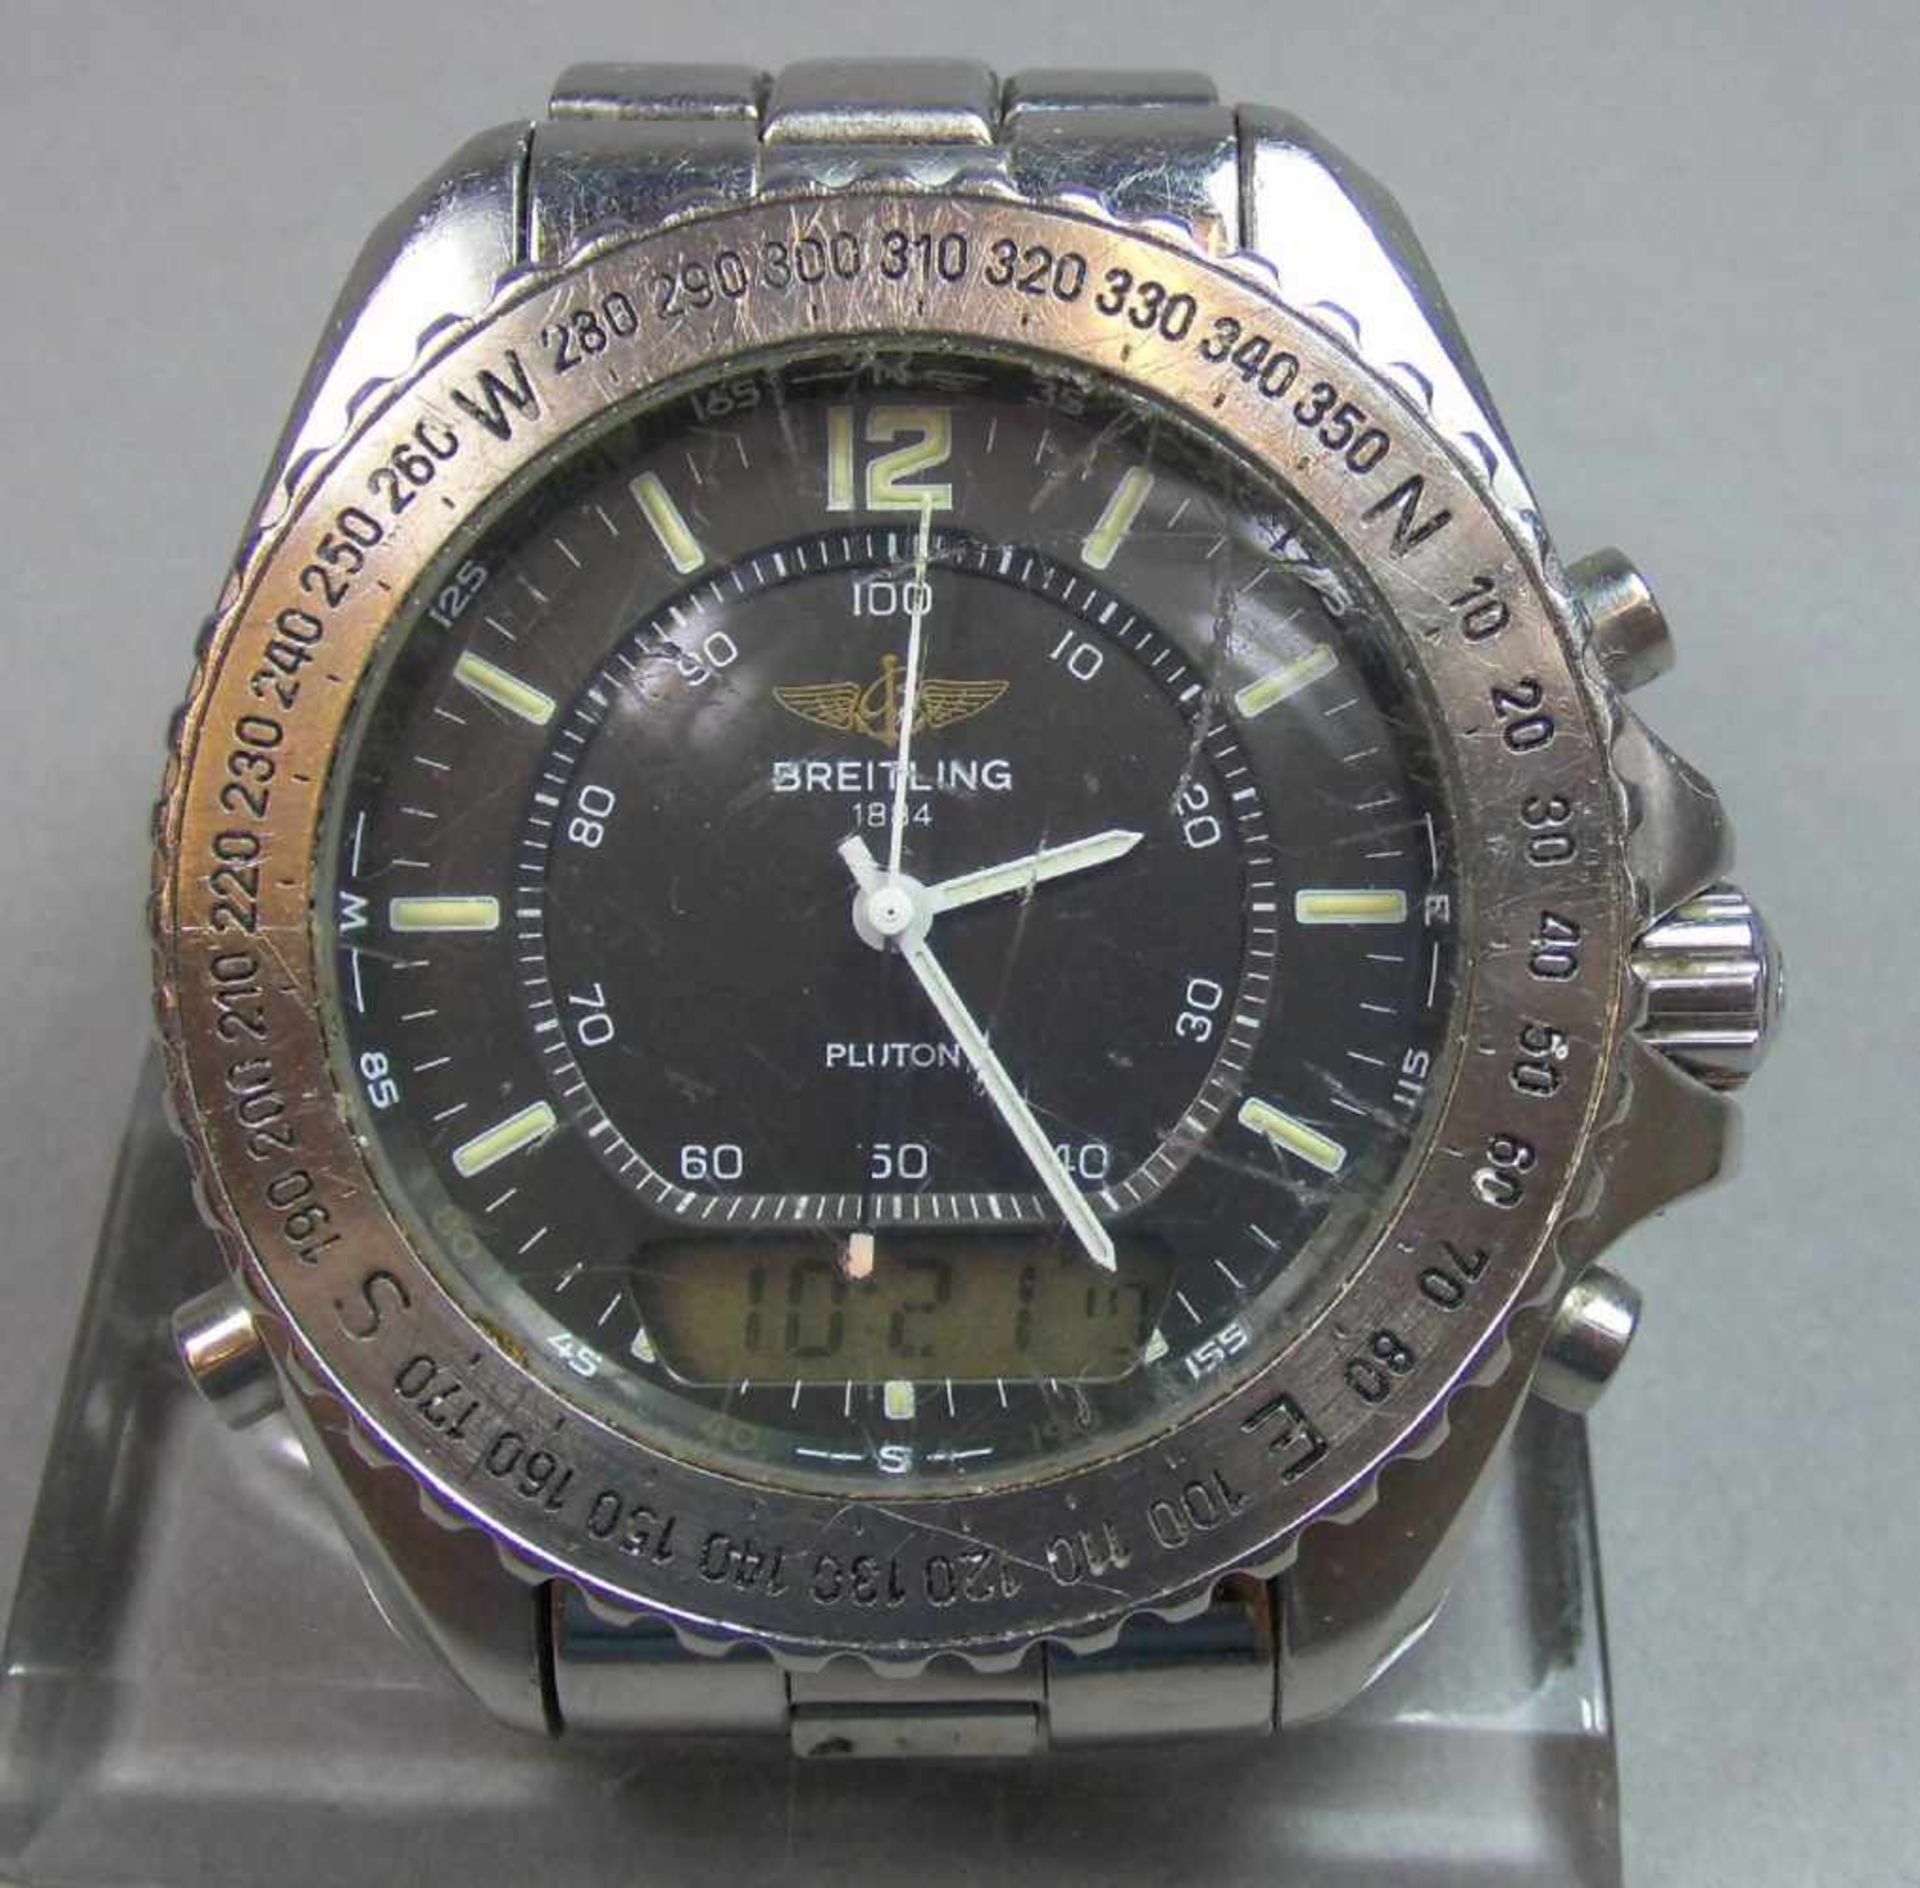 BREITLING "PLUTON" ARMBANDUHR / wristwatch, Quarz-Uhr, Schweiz. Stahlgehäuse mit drehbarer - Bild 2 aus 9